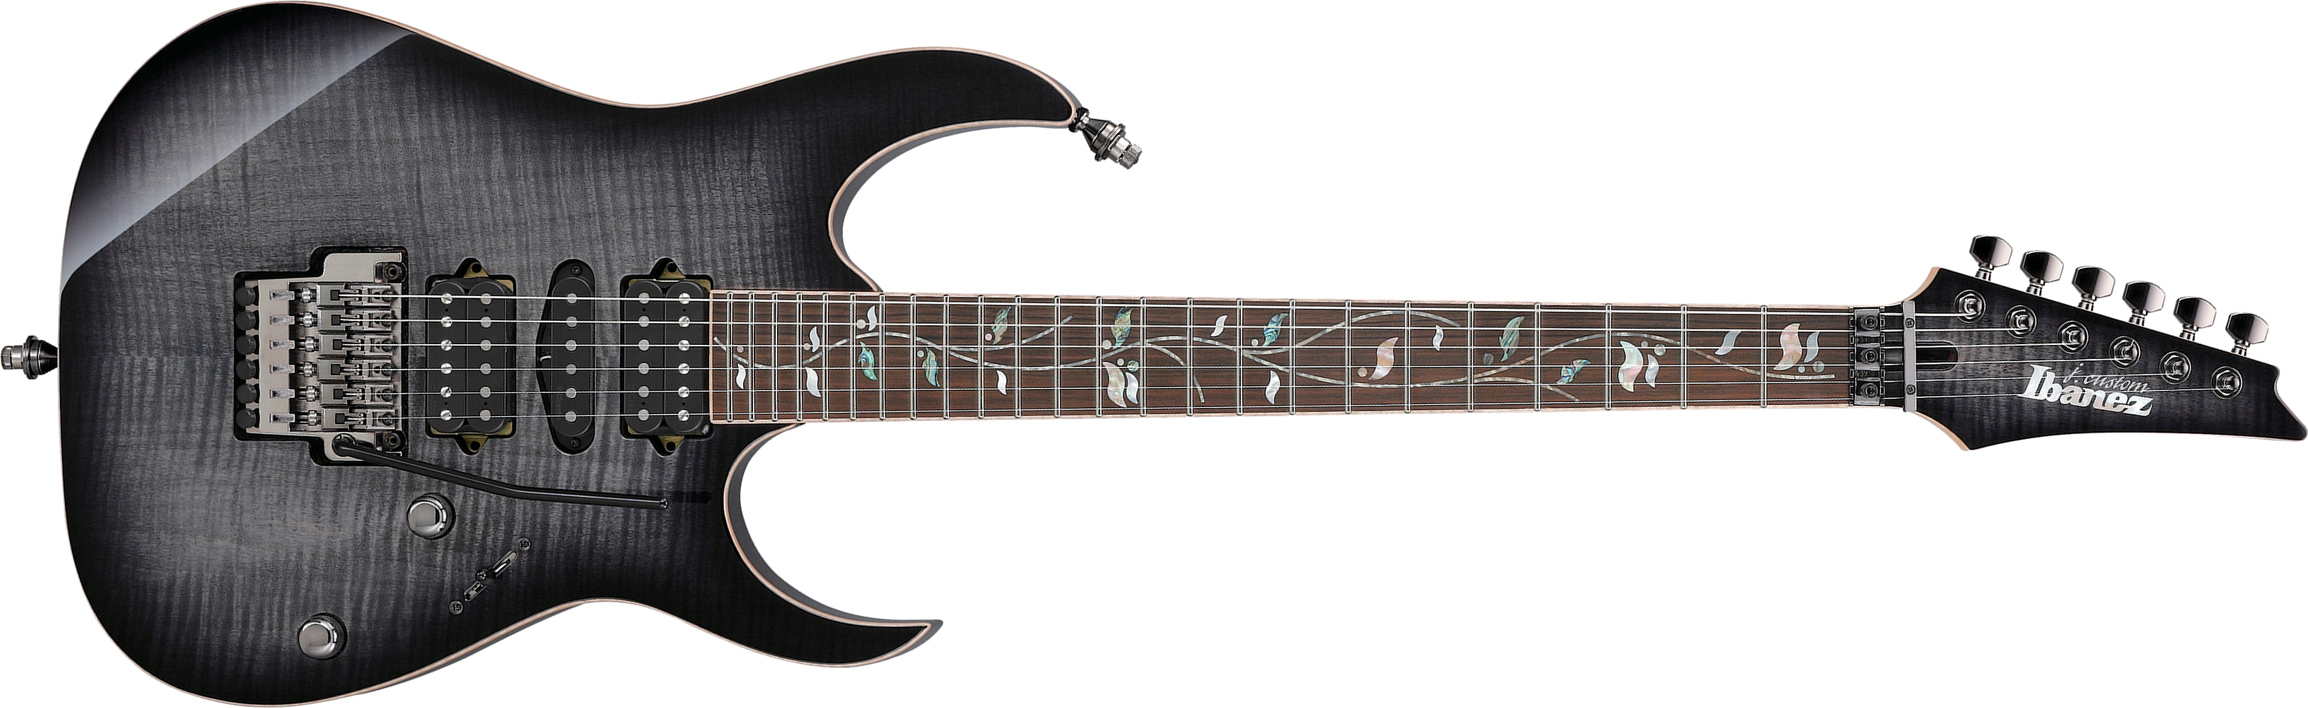 Ibanez Rg8570 Bre J.custom Jap Hsh Dimarzio Fr Eb - Black Rutile - Str shape electric guitar - Main picture